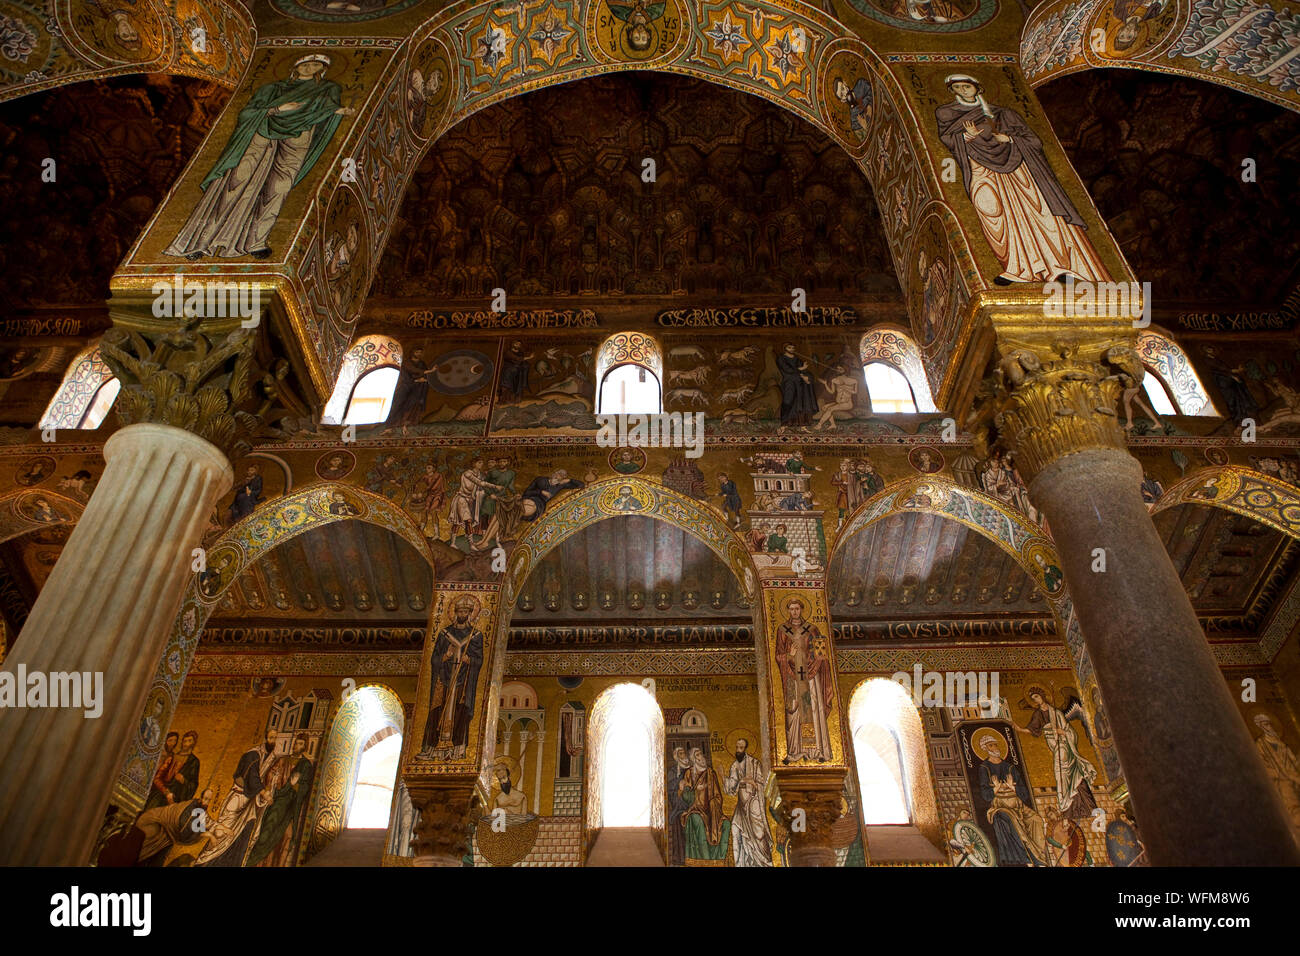 PALERMO - Interior of the Palatina chapel  at the Palazzo Normanno. Stock Photo